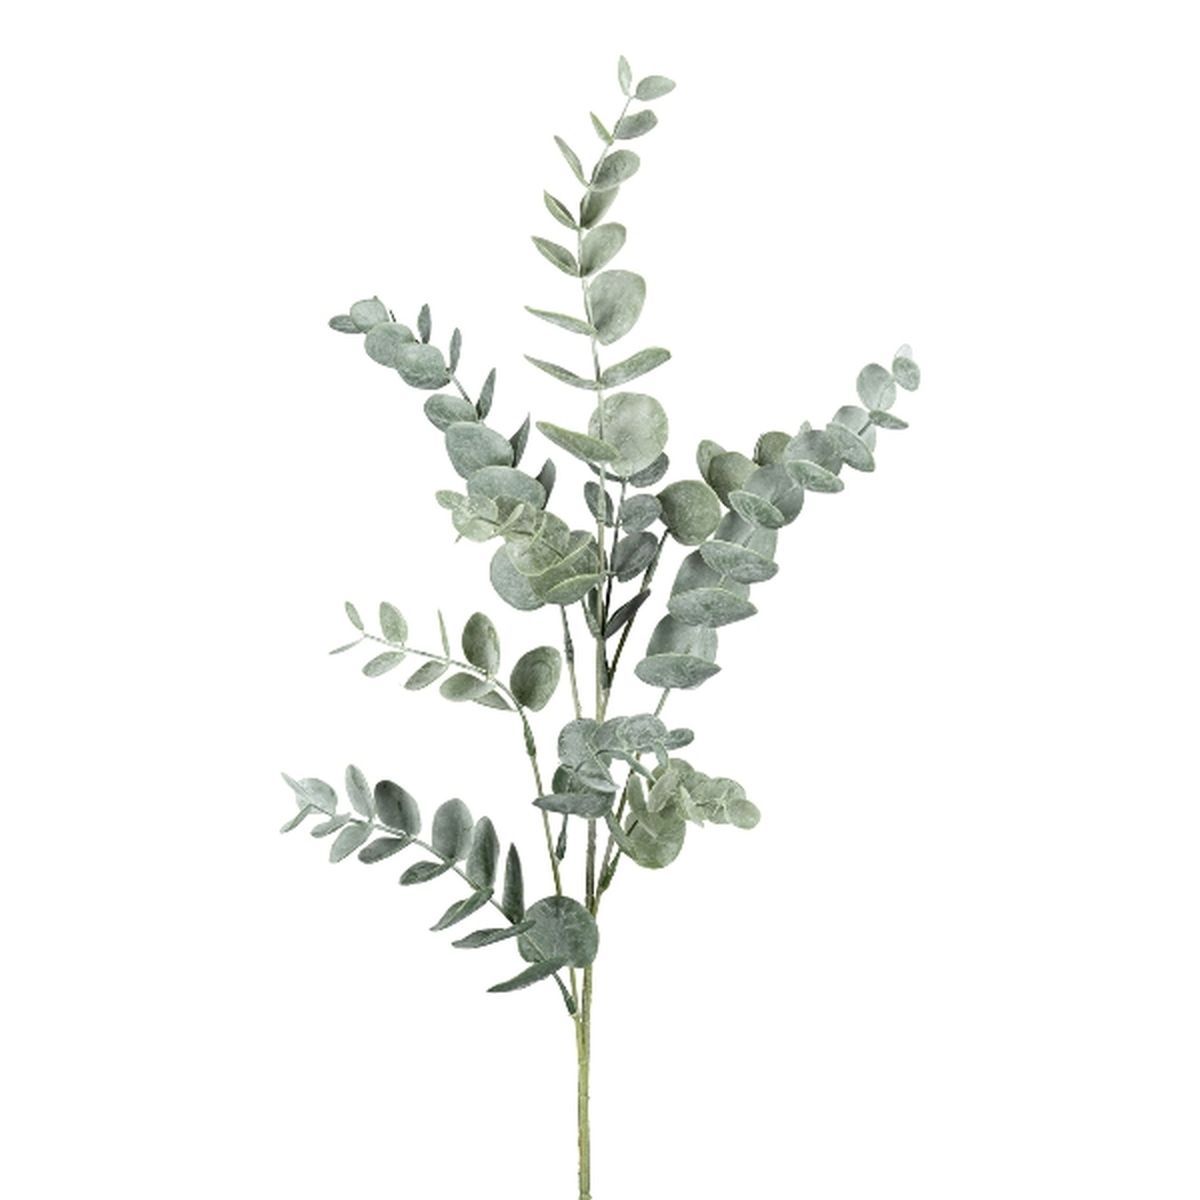 Eukalyptuszweig Grau/Grün 43cm